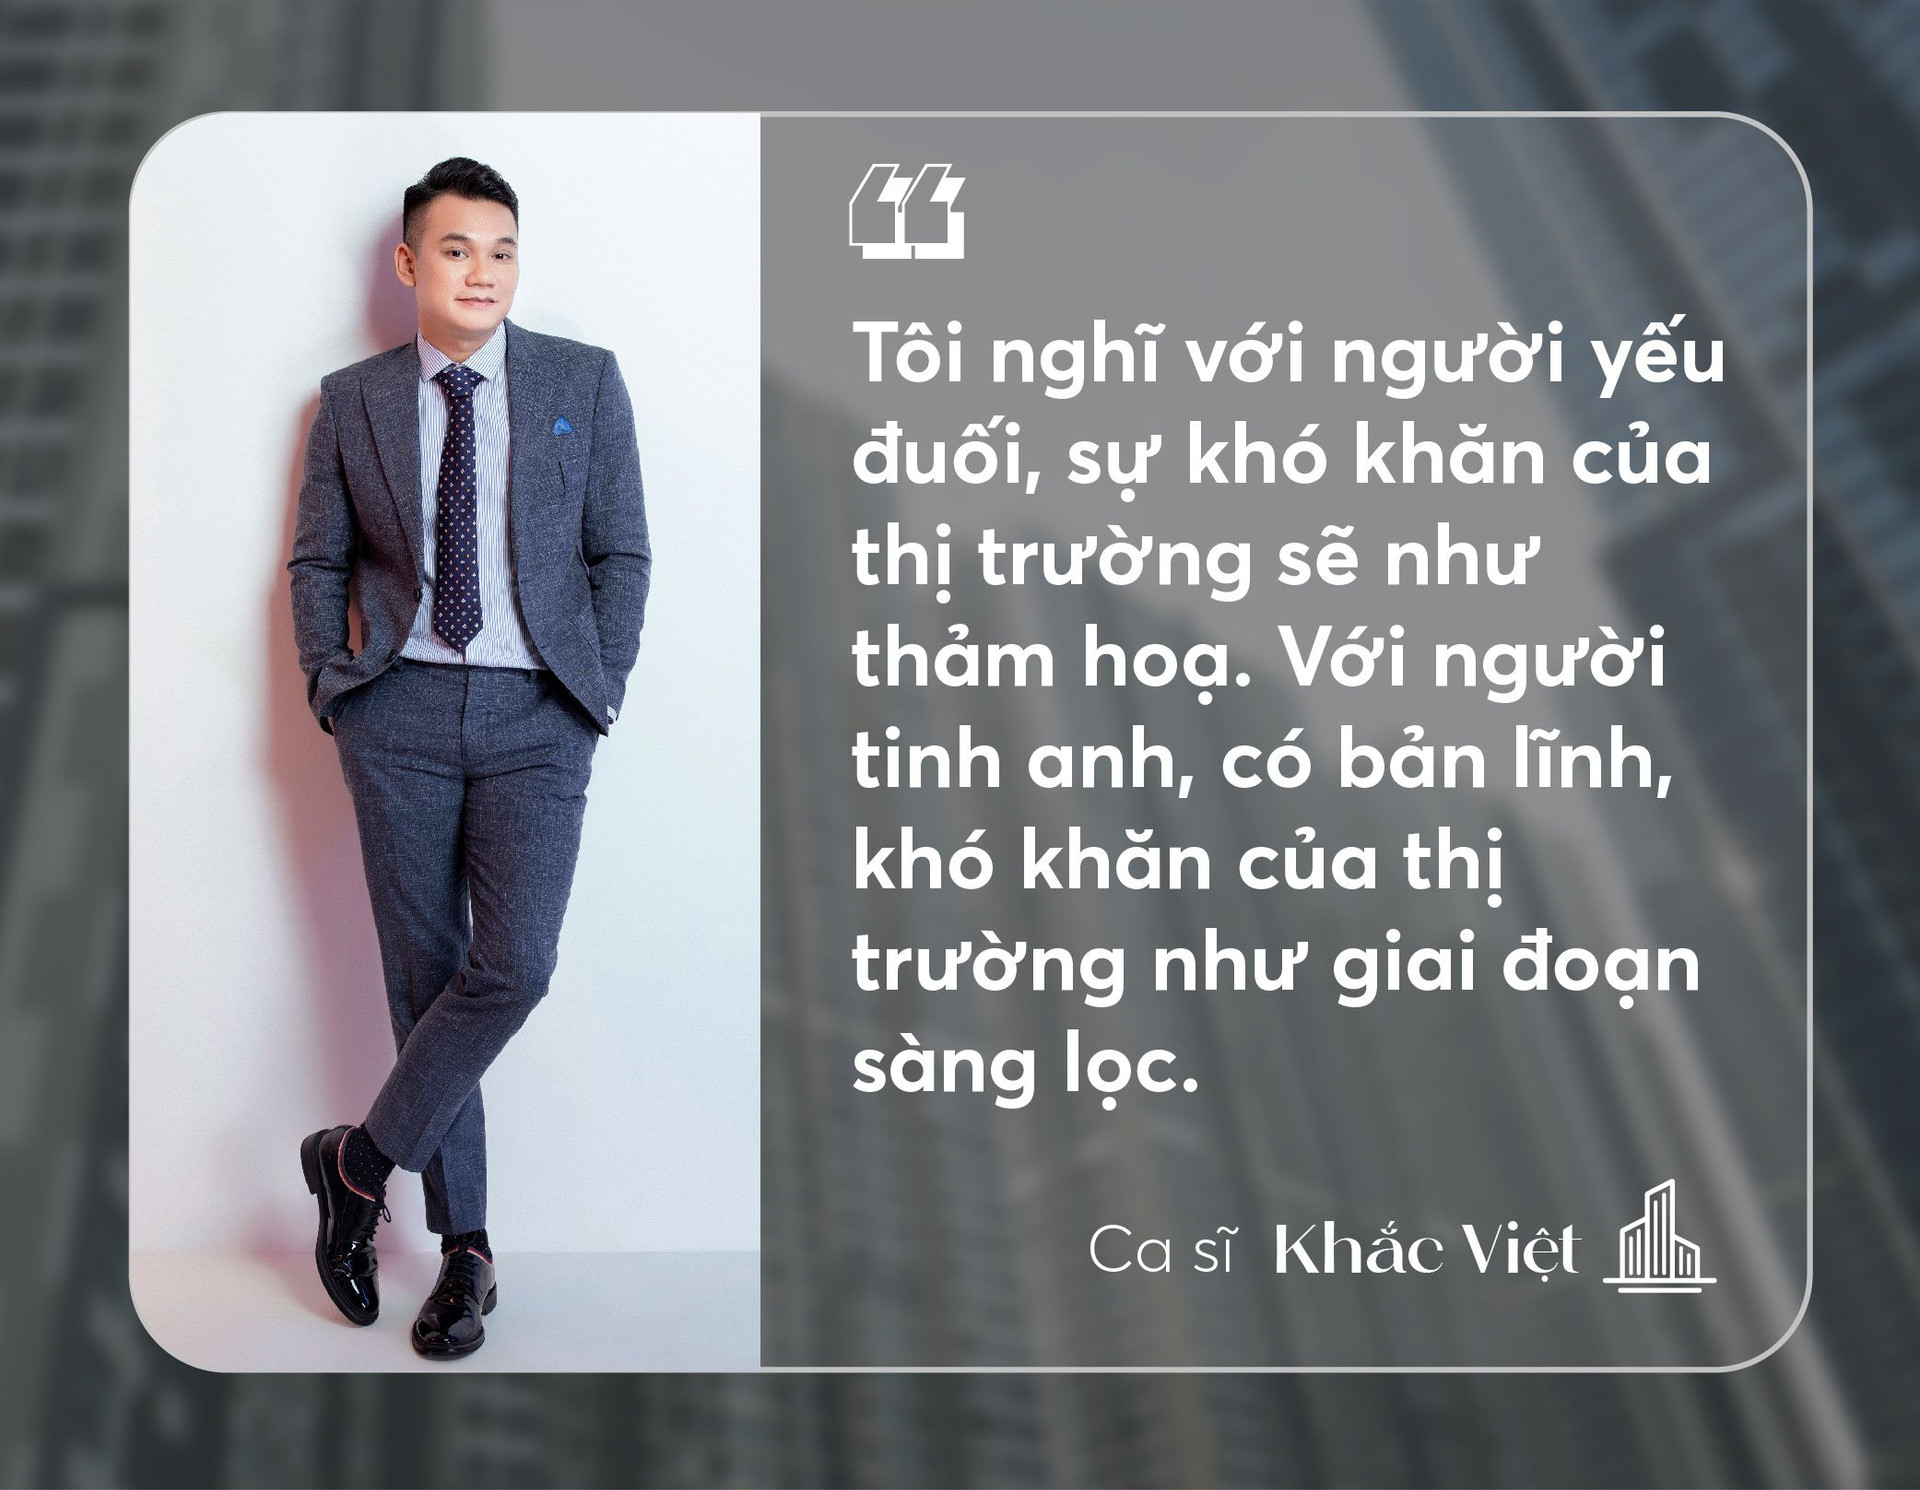 Ca sĩ Khắc Việt: “Khi thị trường bất động sản sôi động, anh đầu tư thắng, anh nói gì cũng sẽ hay” - Ảnh 5.